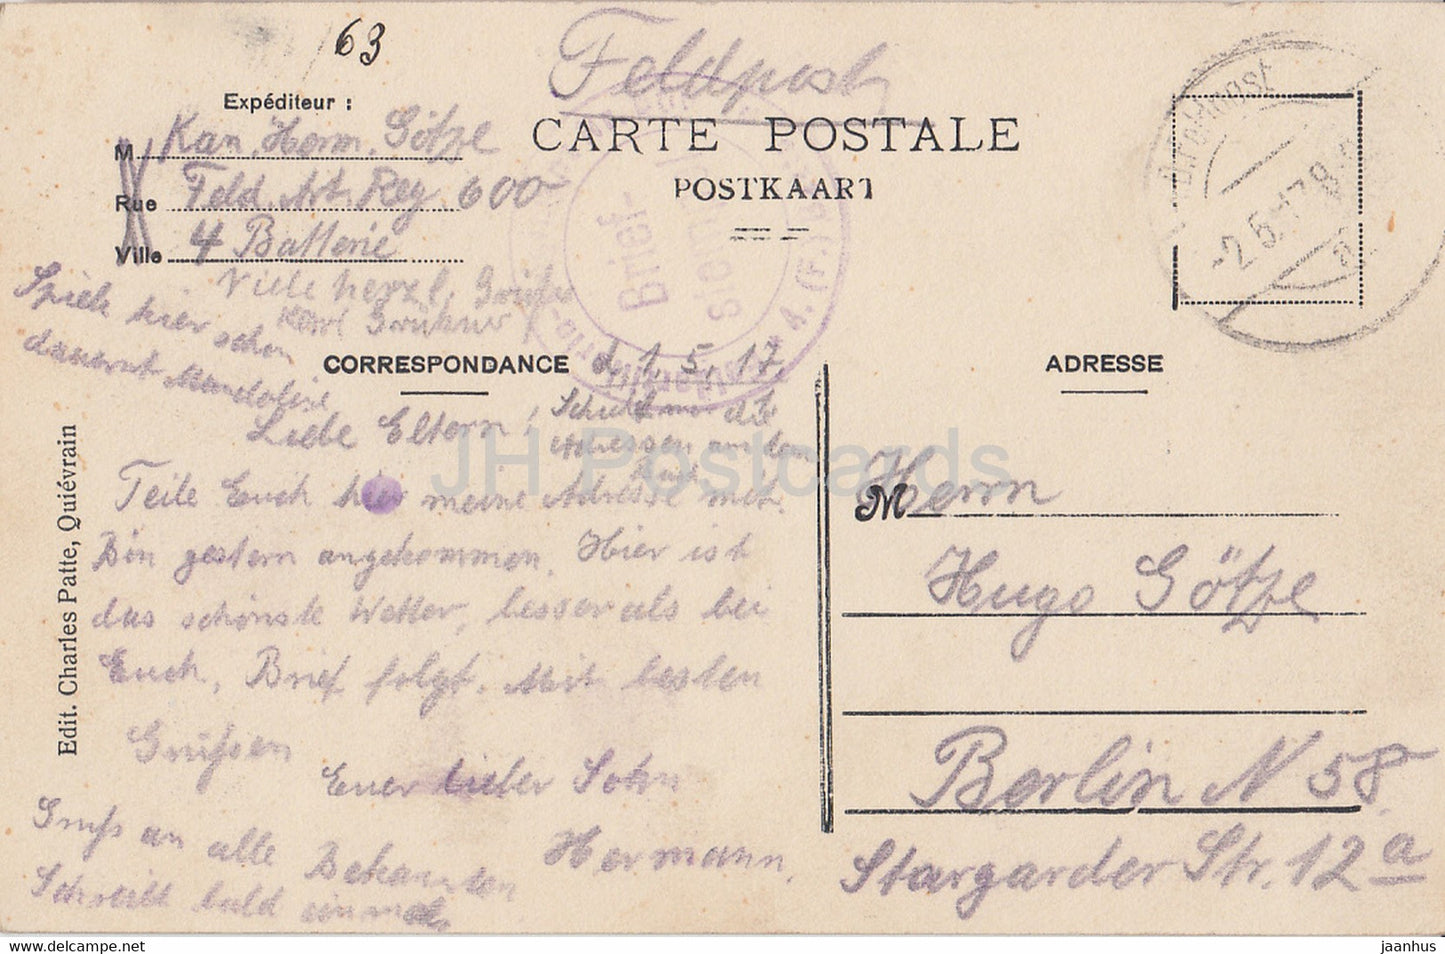 Montignies sur Roc - Le bas des Rocs - Feldpost - alte Postkarte - 1917 - Belgien - gebraucht